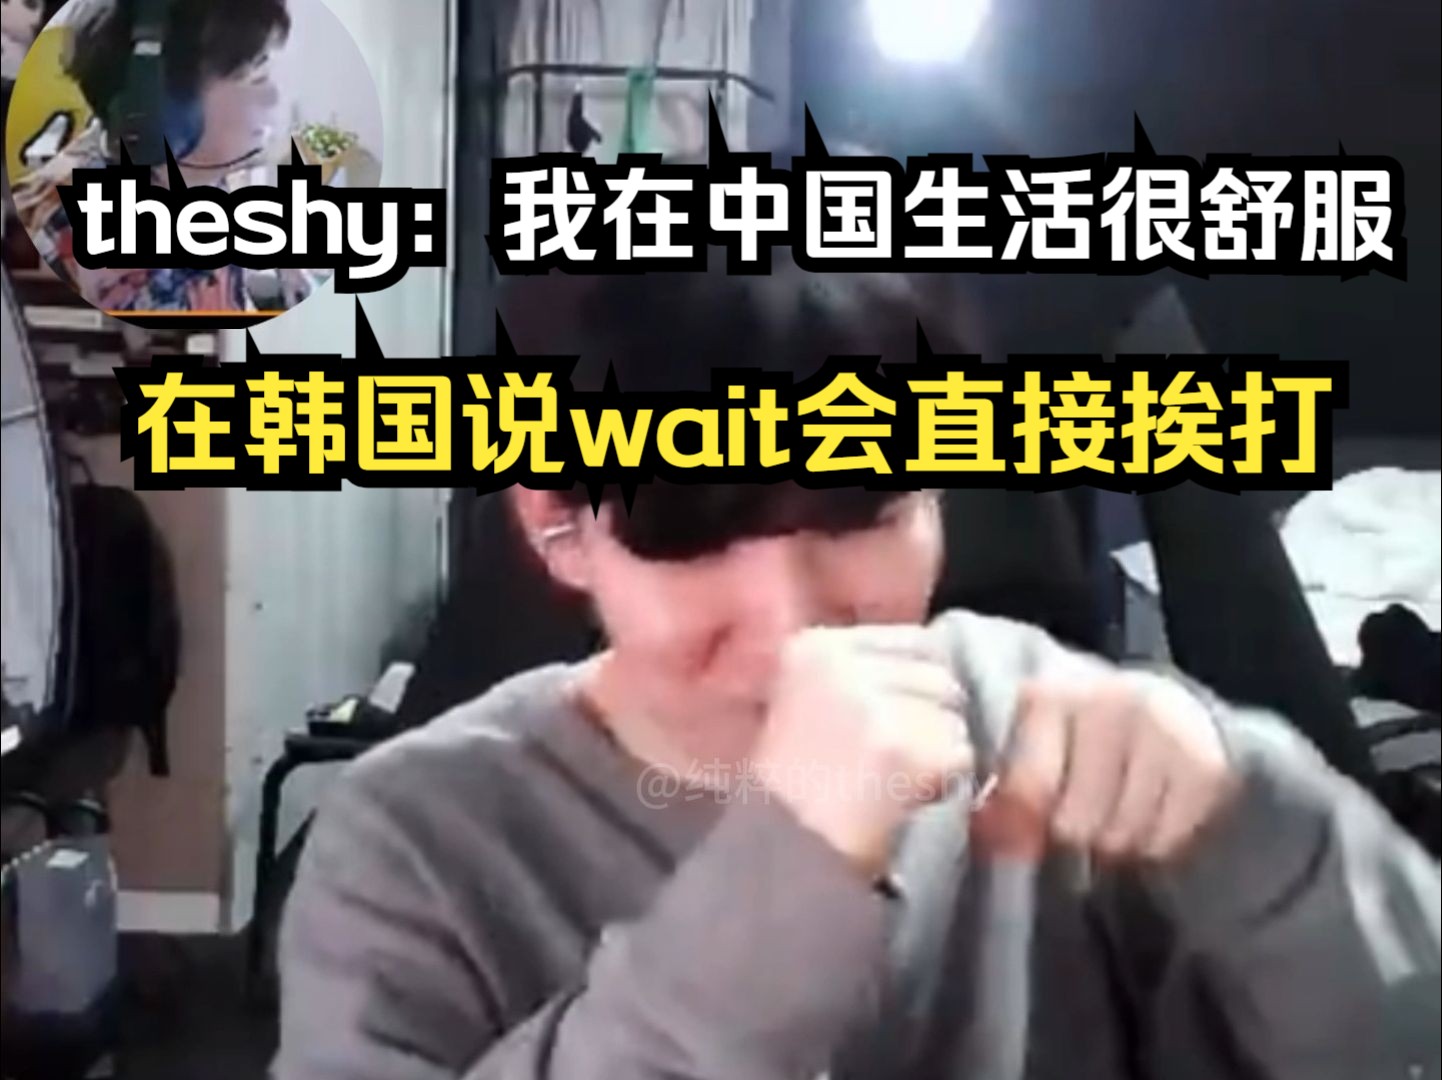 theshy：说实话，我在中国生活很舒服！在韩国说wait有点素质低，会直接挨打！